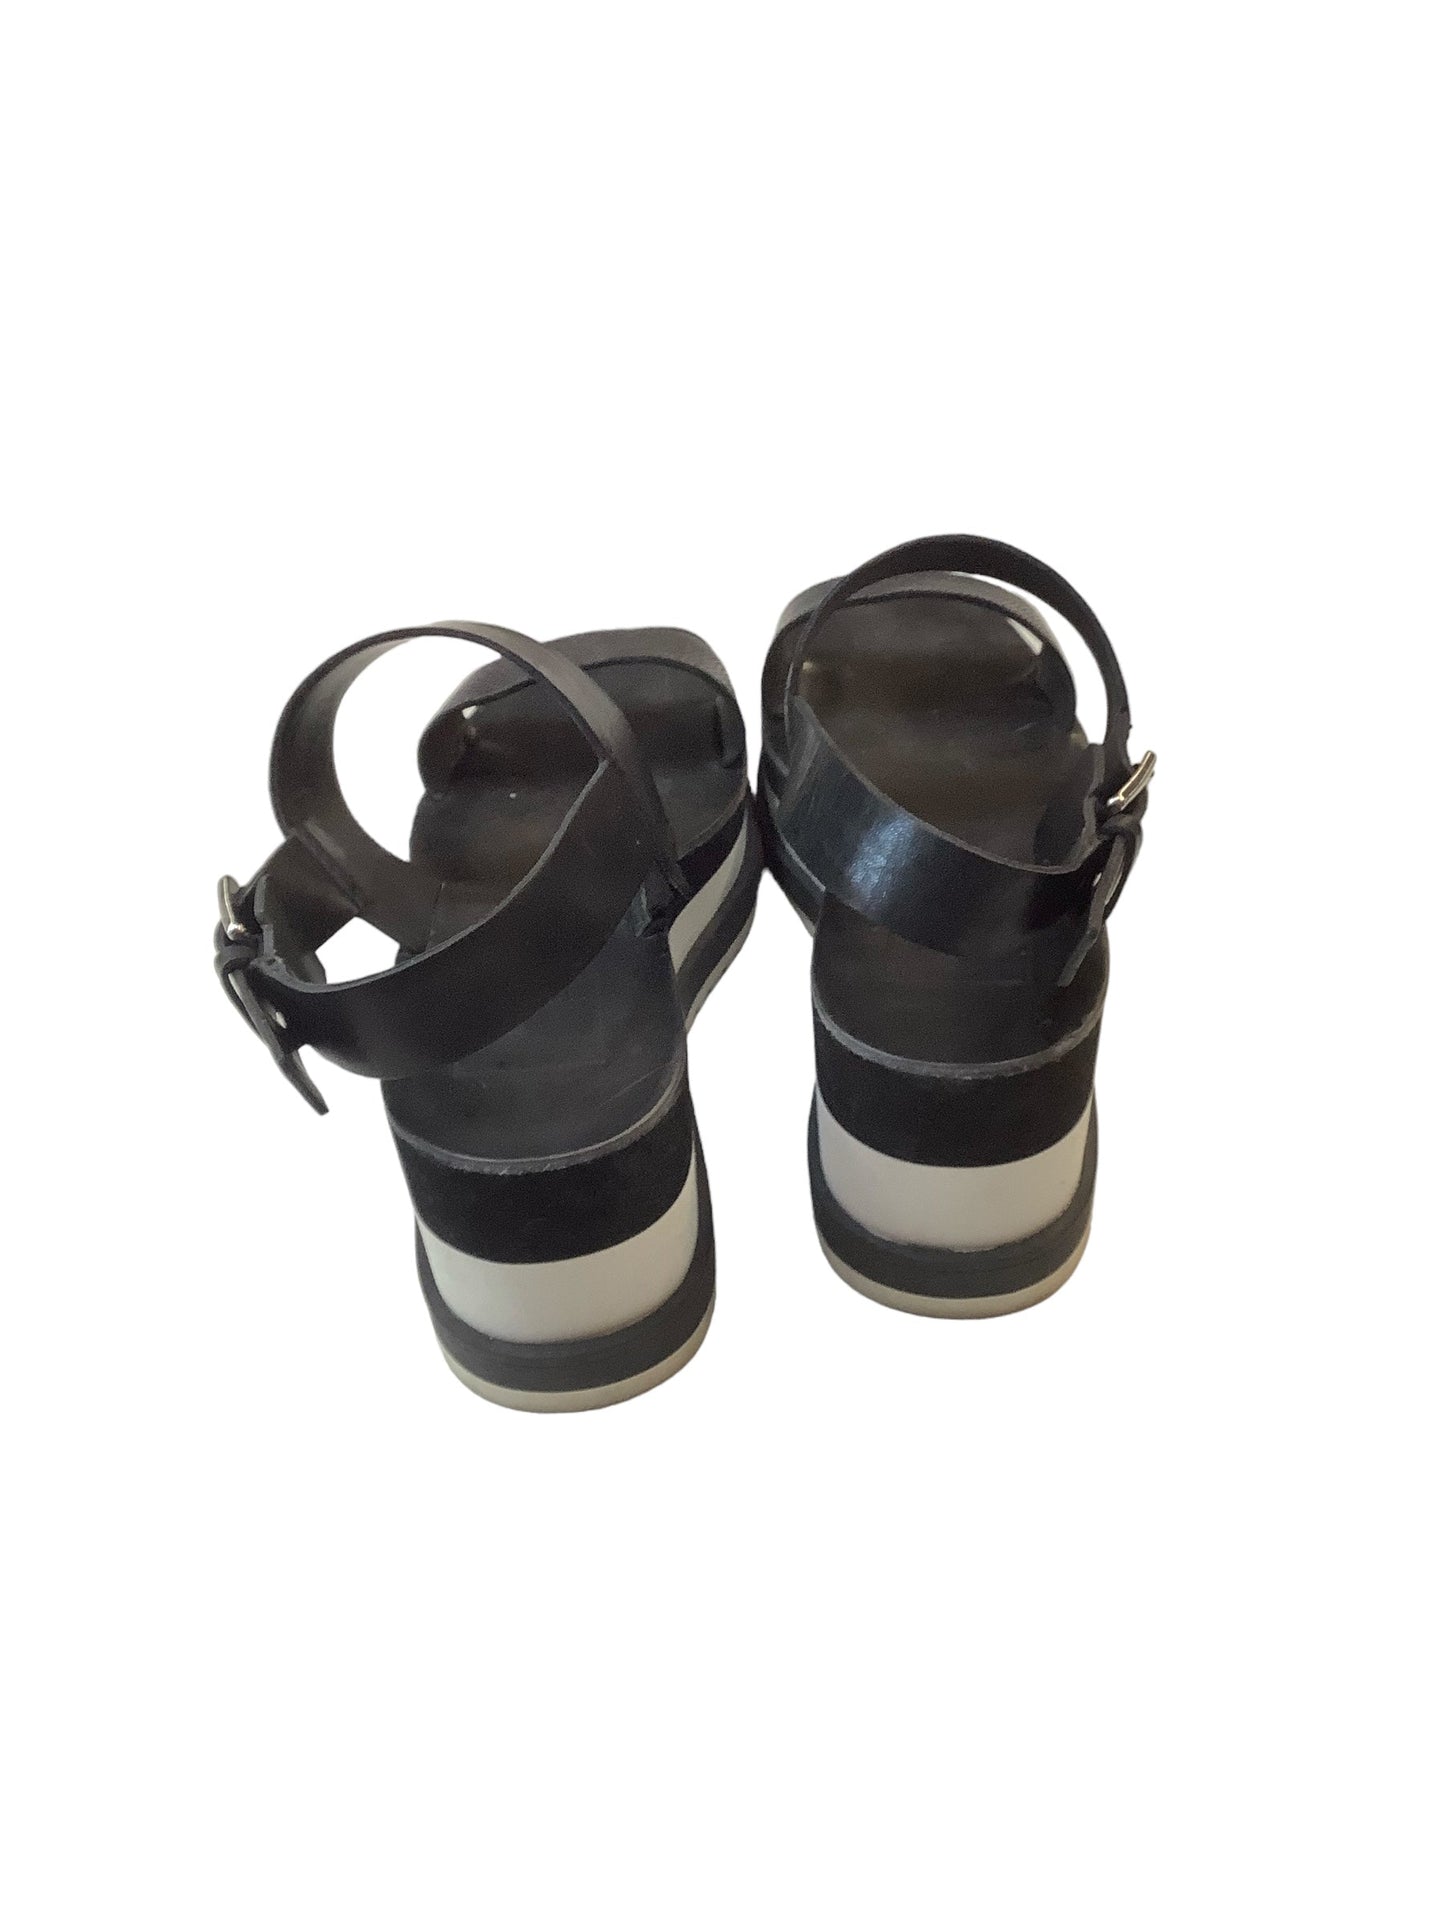 Black & White Sandals Flats Dolce Vita, Size 7